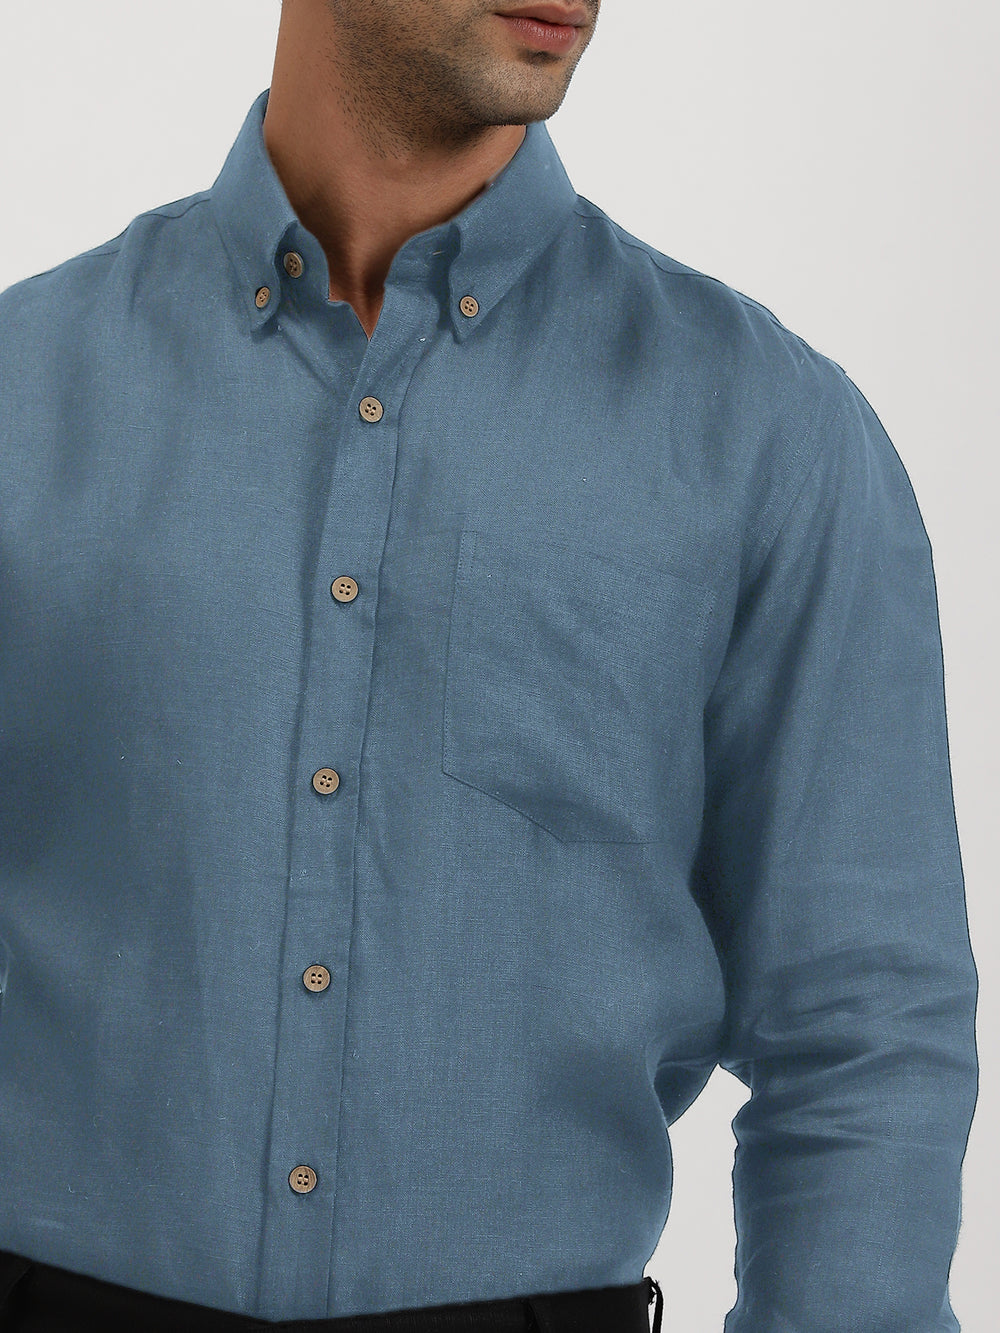 Austin - Pure Linen Button Down Full Sleeve Shirt - Blue Grey